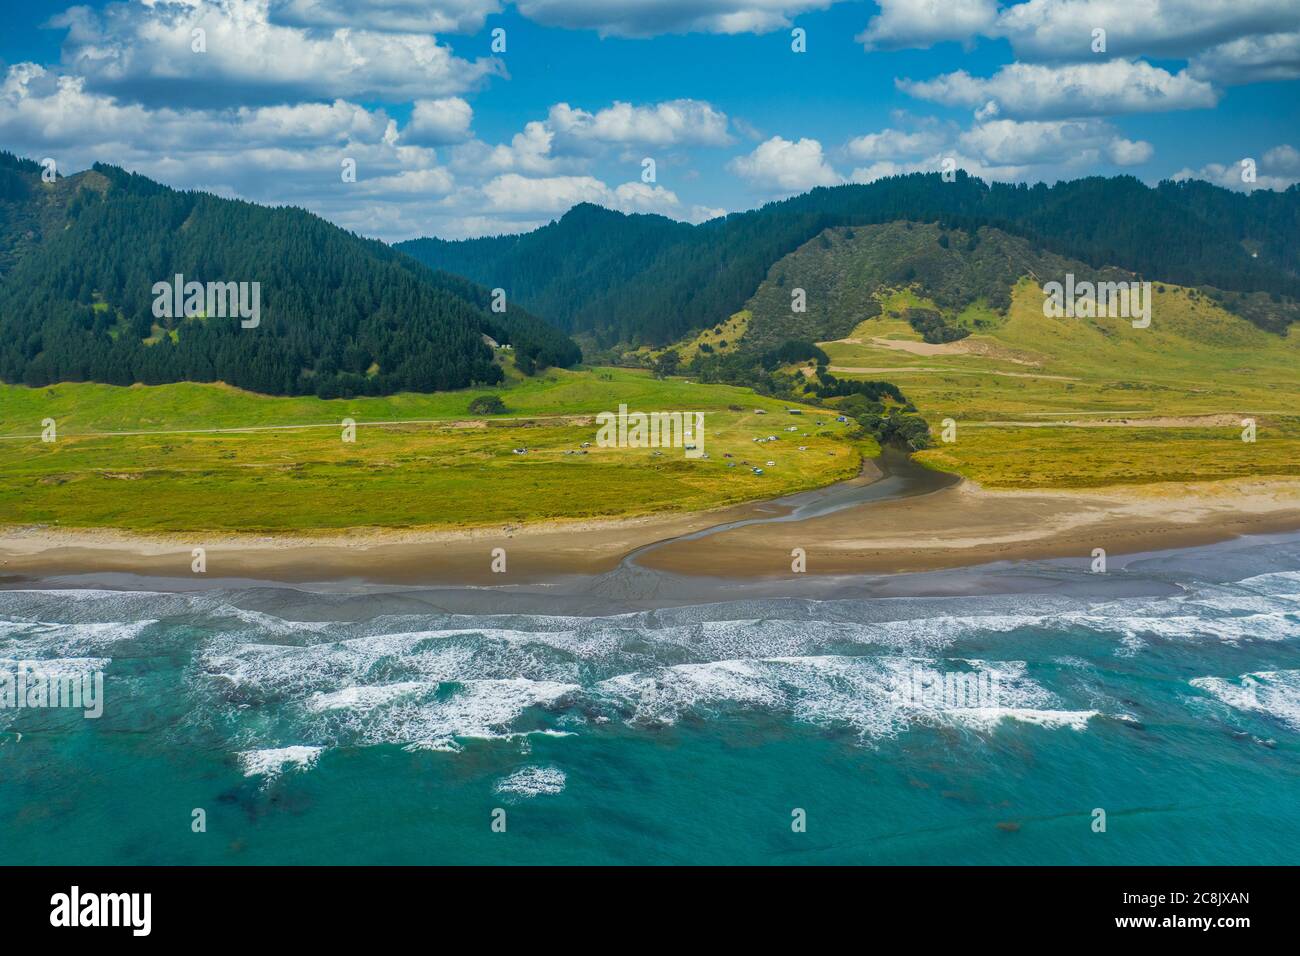 Una vista aerea del Campground di Capo Est vicino all'Oceano Pacifico. Situato sulla punta orientale dell'Isola Nord della Nuova Zelanda. Montagne una foresta le Foto Stock